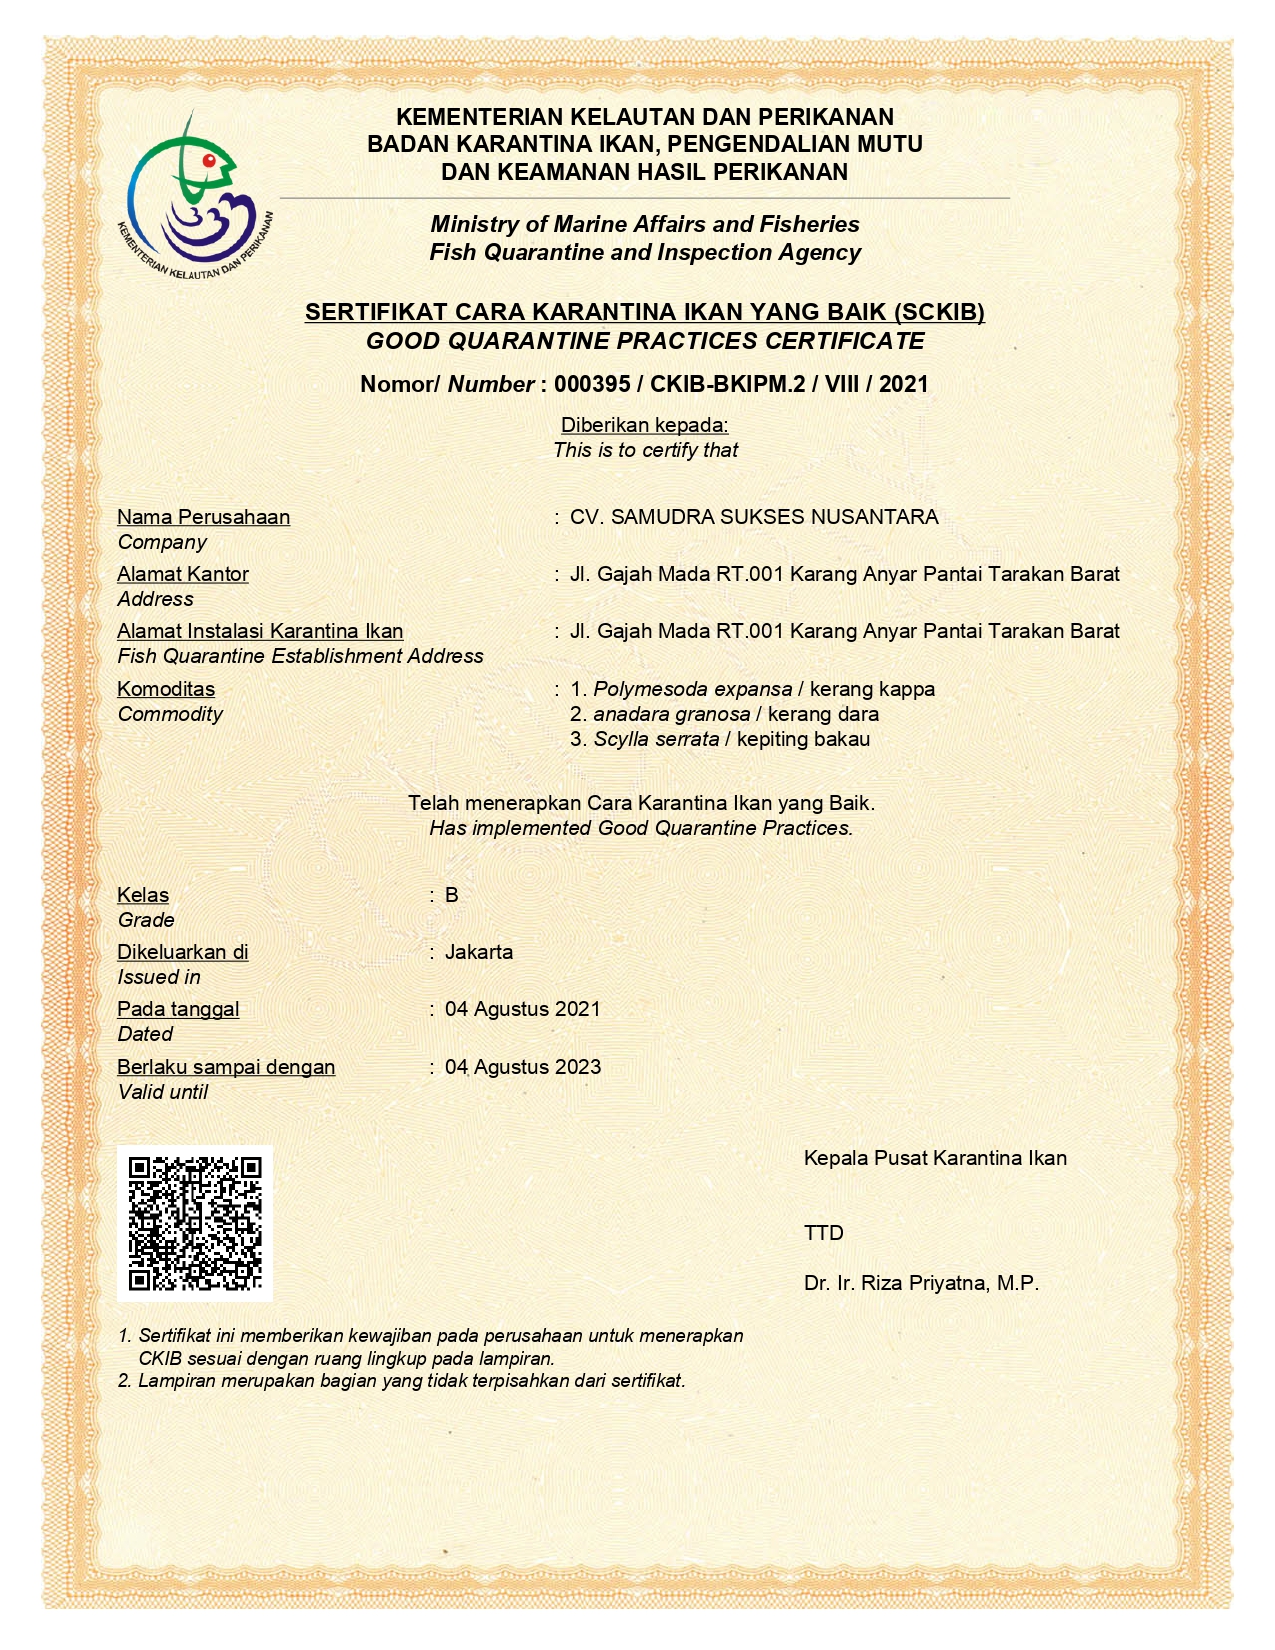 Good Quarantine Practices Certificate